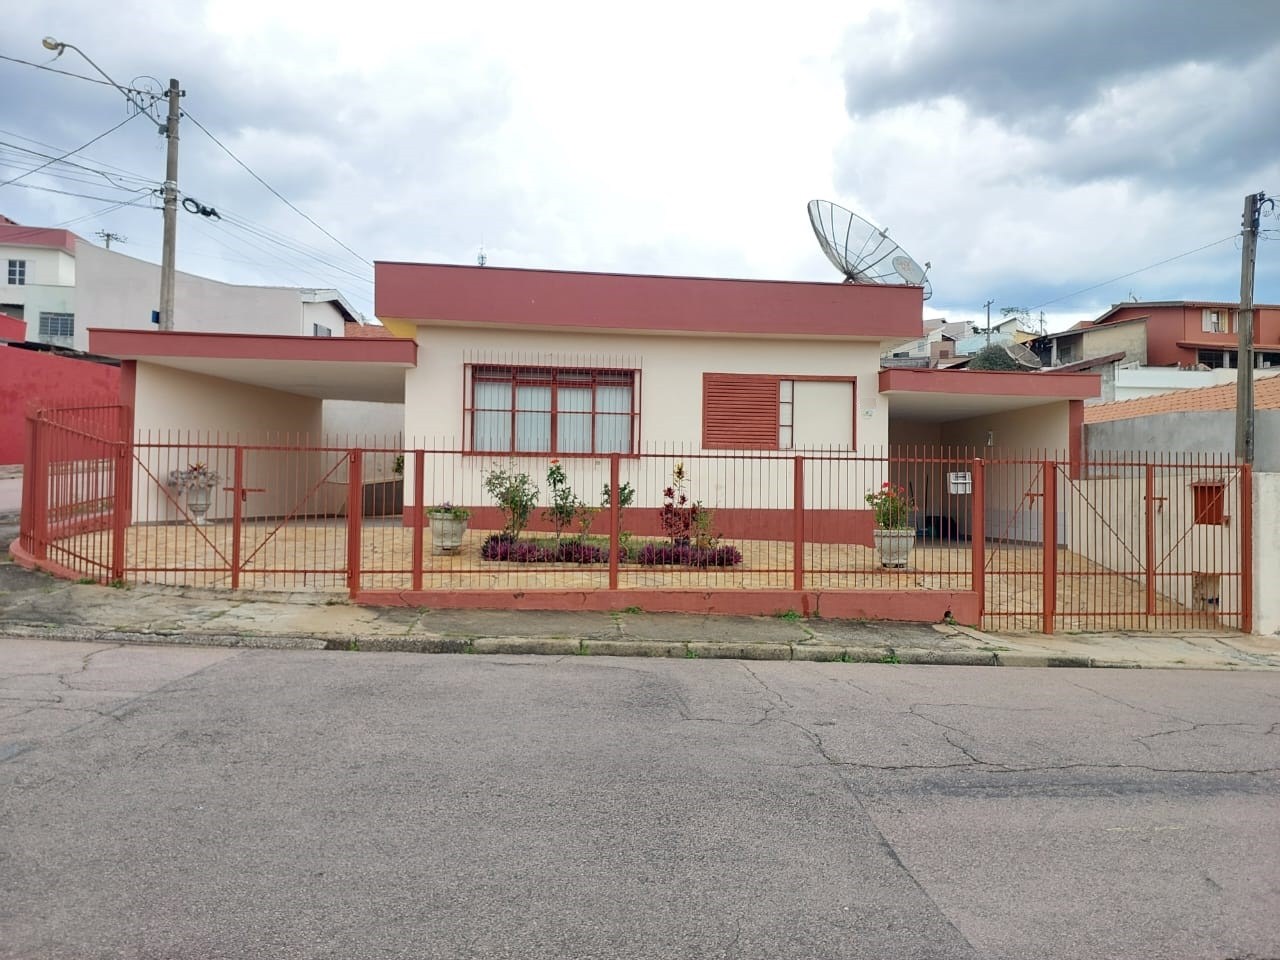 Casa à venda no bairro Jardim das Carpas em Jundiaí/SP